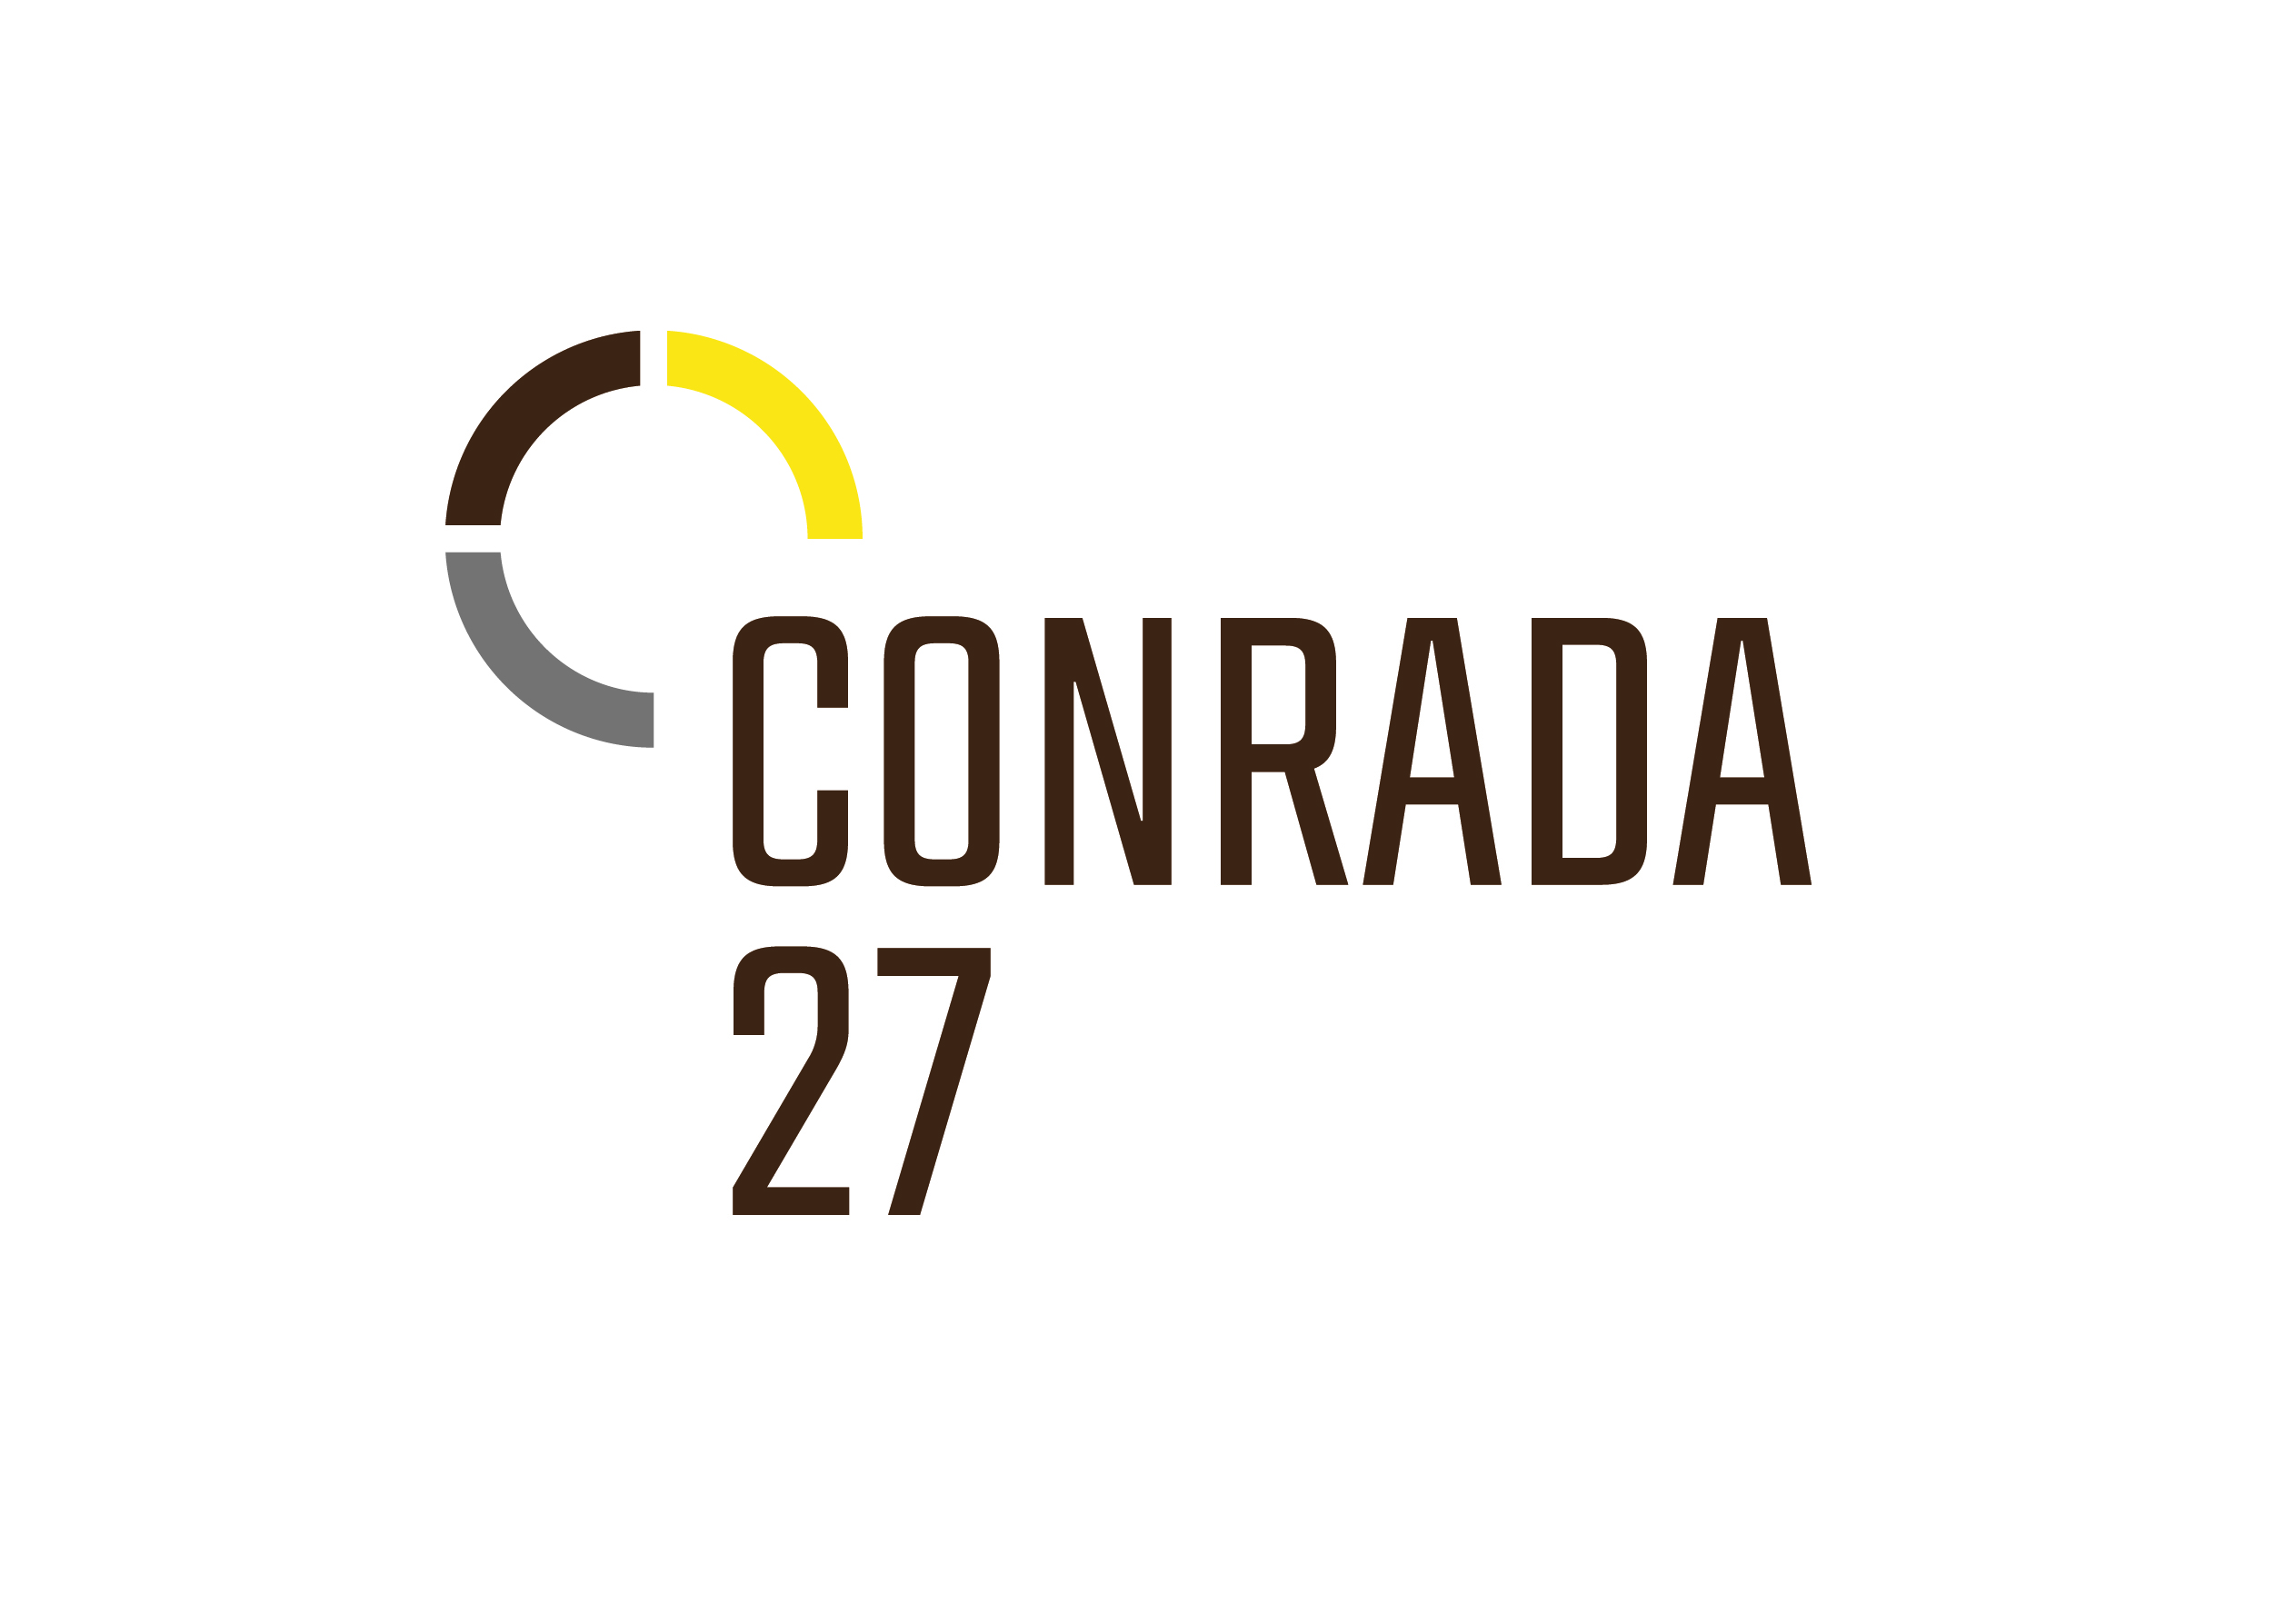 Conrada 27